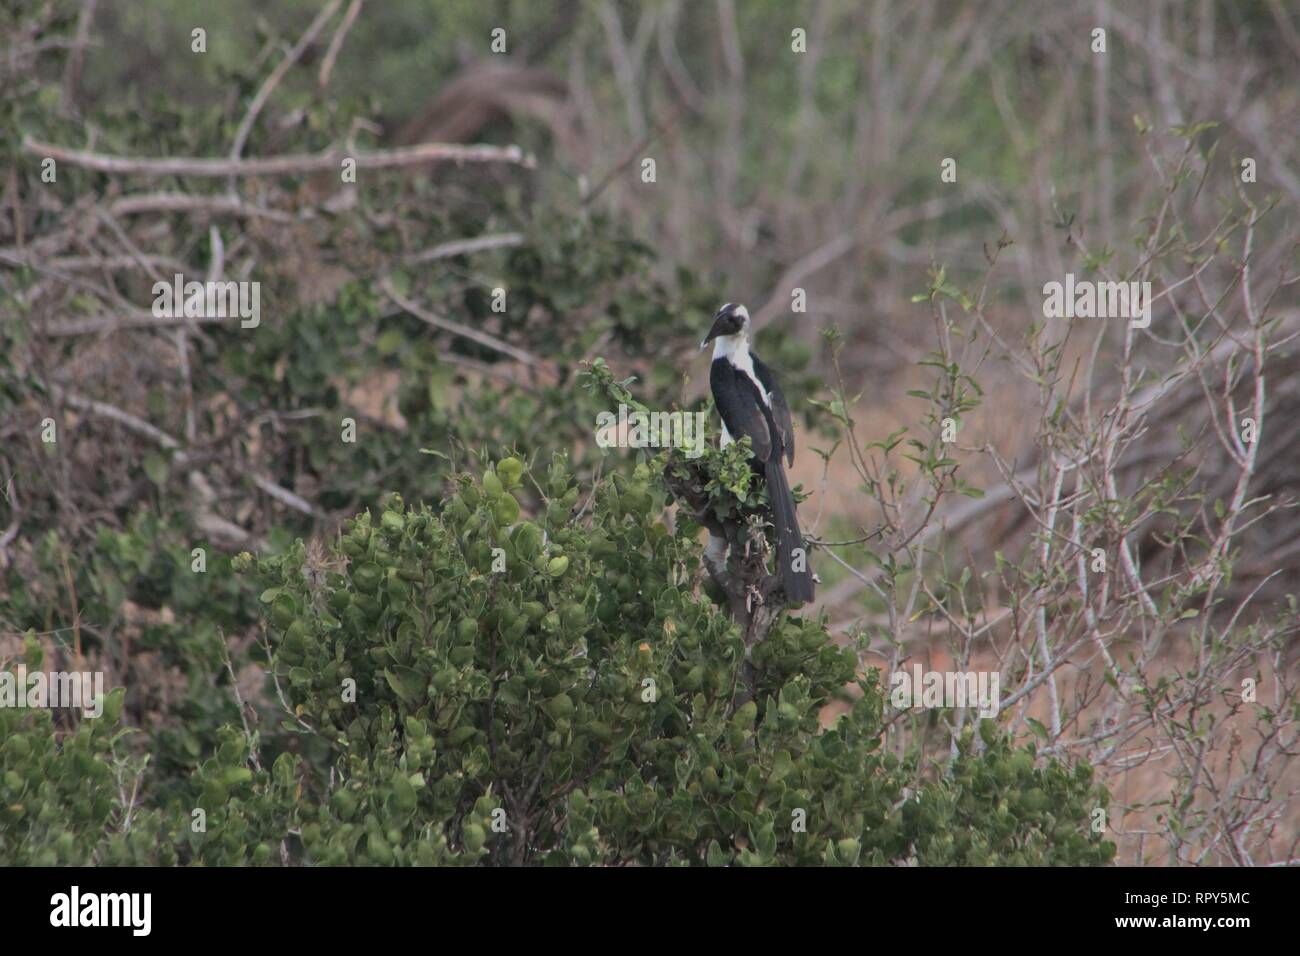 Von-der-Decken´s Hornbill (Tockus deckeni), Tsavo East National Park, Kenya Stock Photo